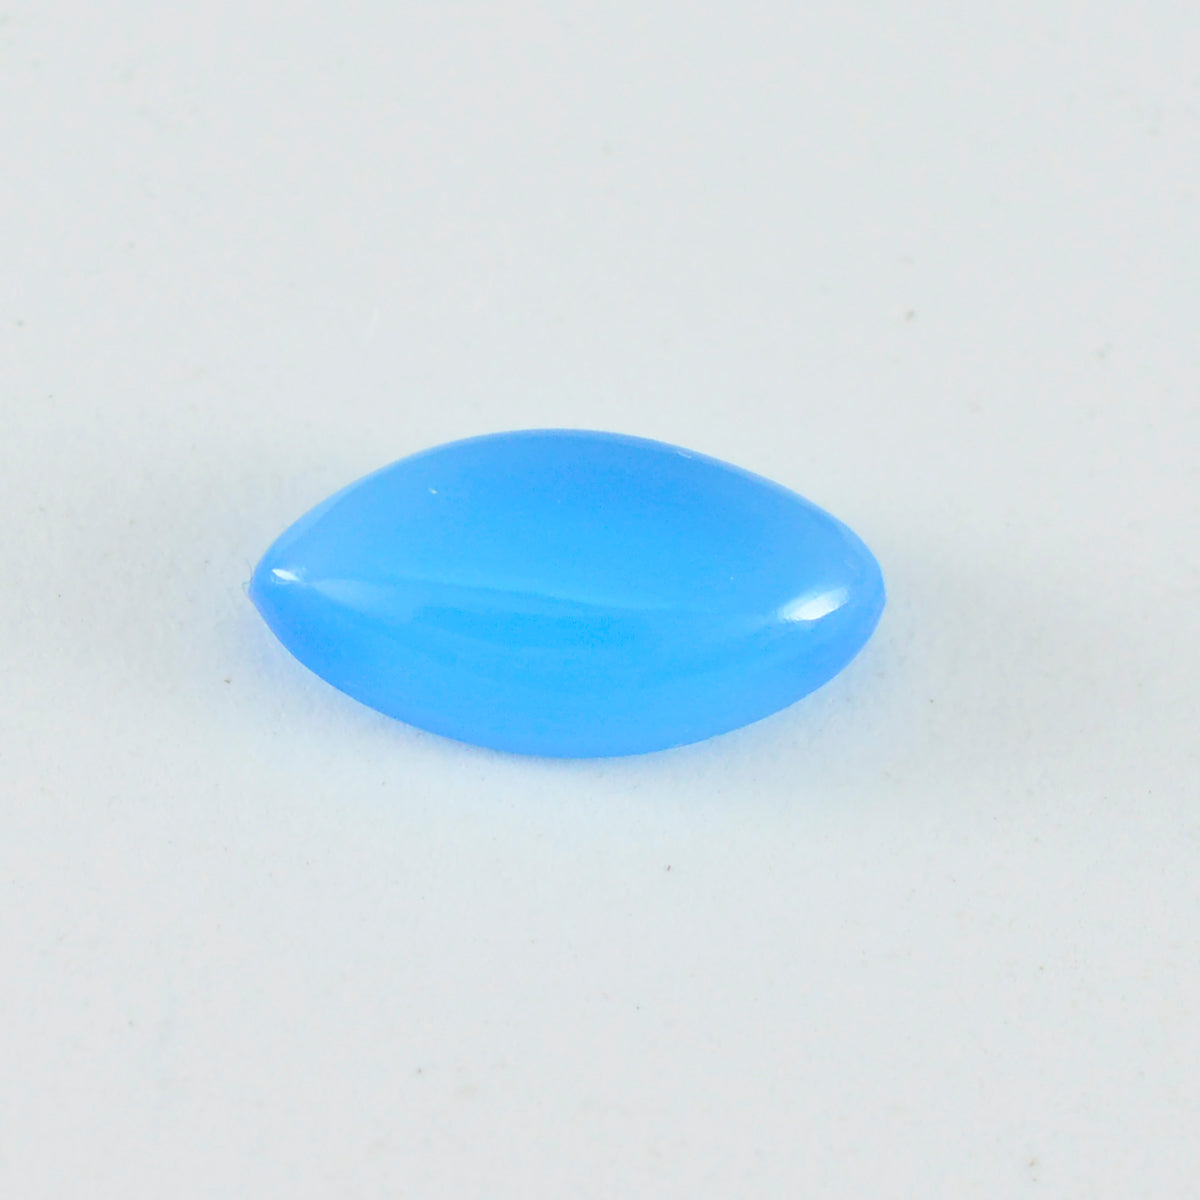 Riyogems 1 pieza cabujón de calcedonia azul 4x6 mm forma ovalada piedra de calidad fantástica